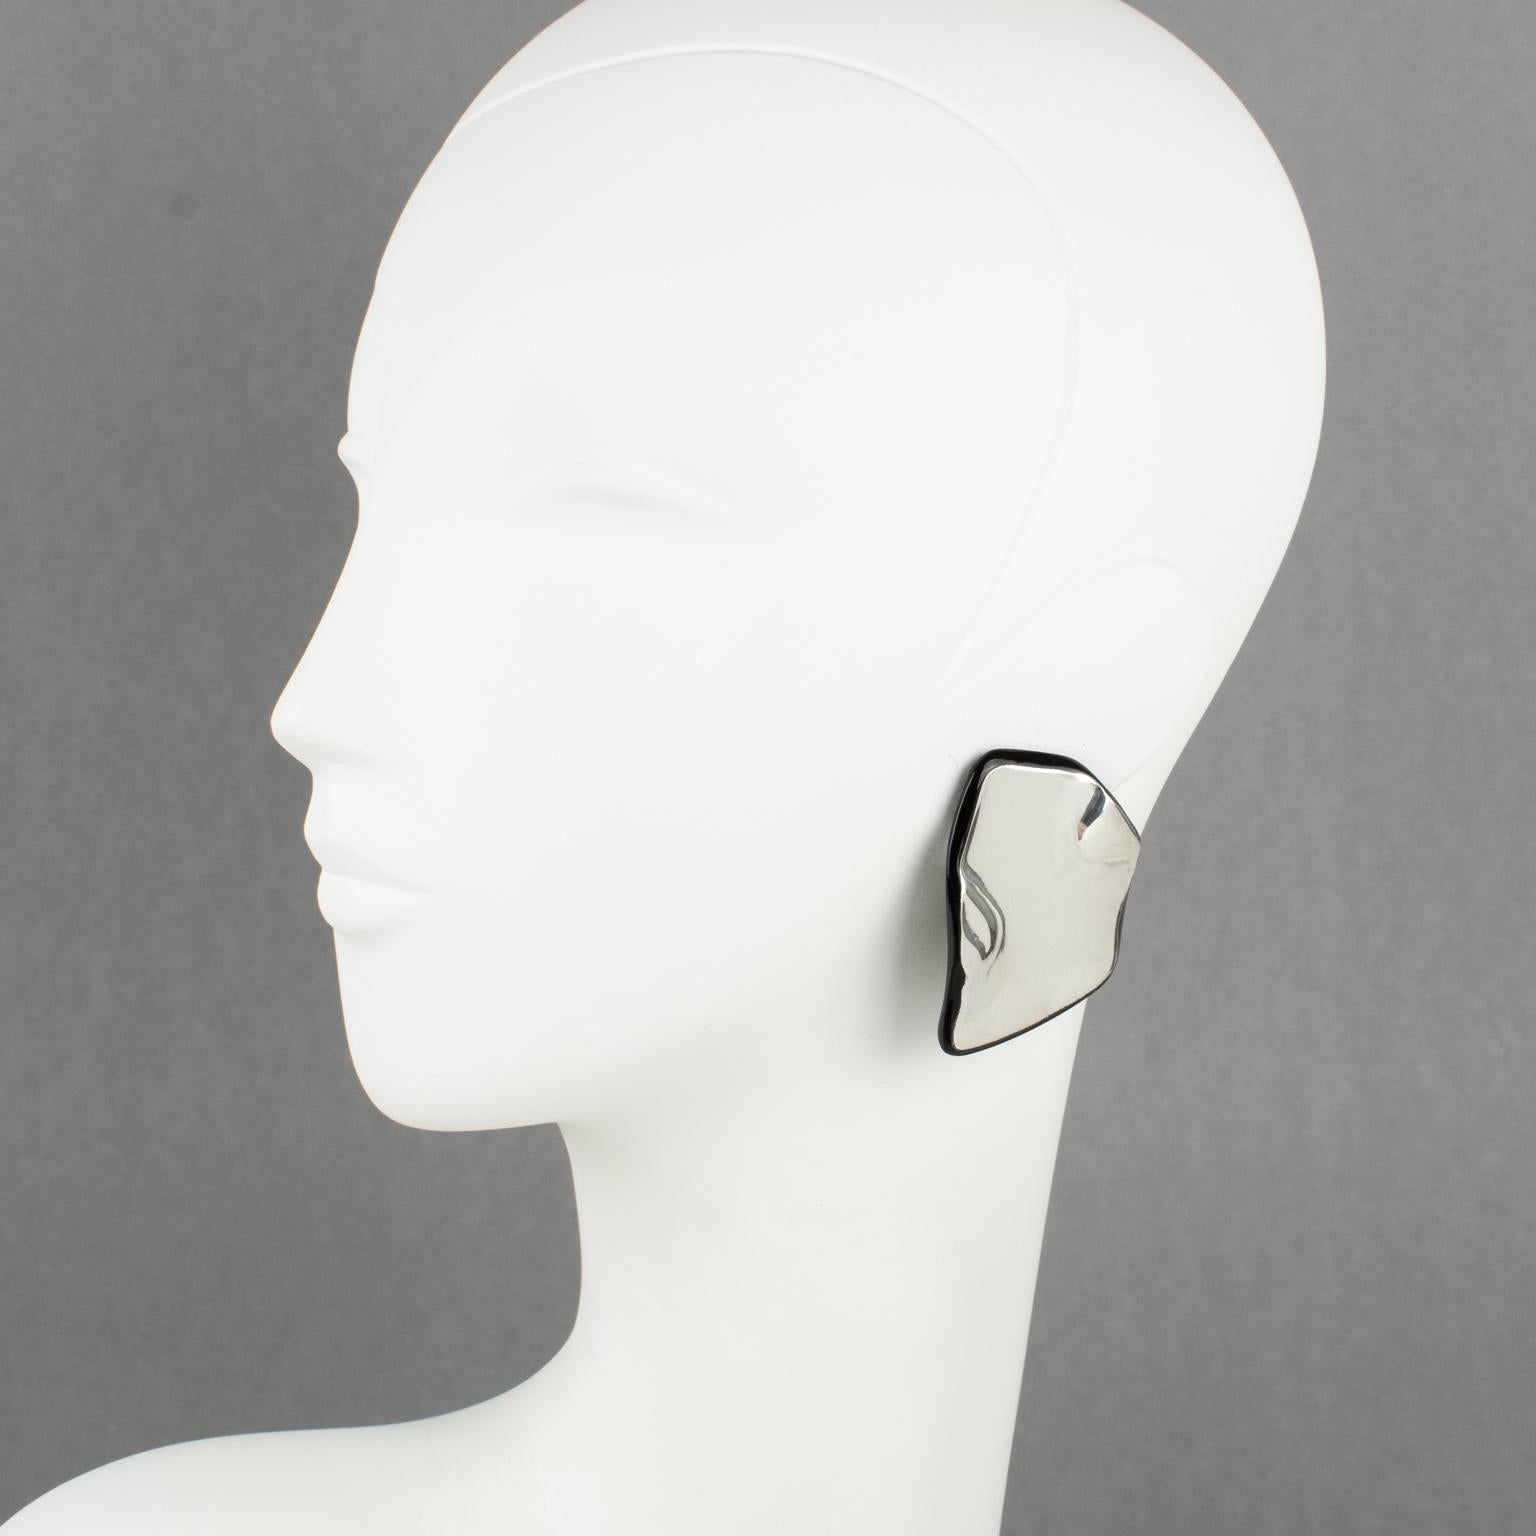 Anne et Frank Vigneri ont conçu ces superbes boucles d'oreilles à clip en Lucite dans les années 1980. Le design de forme libre comprend une base en Lucite noire, surmontée d'un élément en relief en argent sterling. Les boucles d'oreilles ne sont